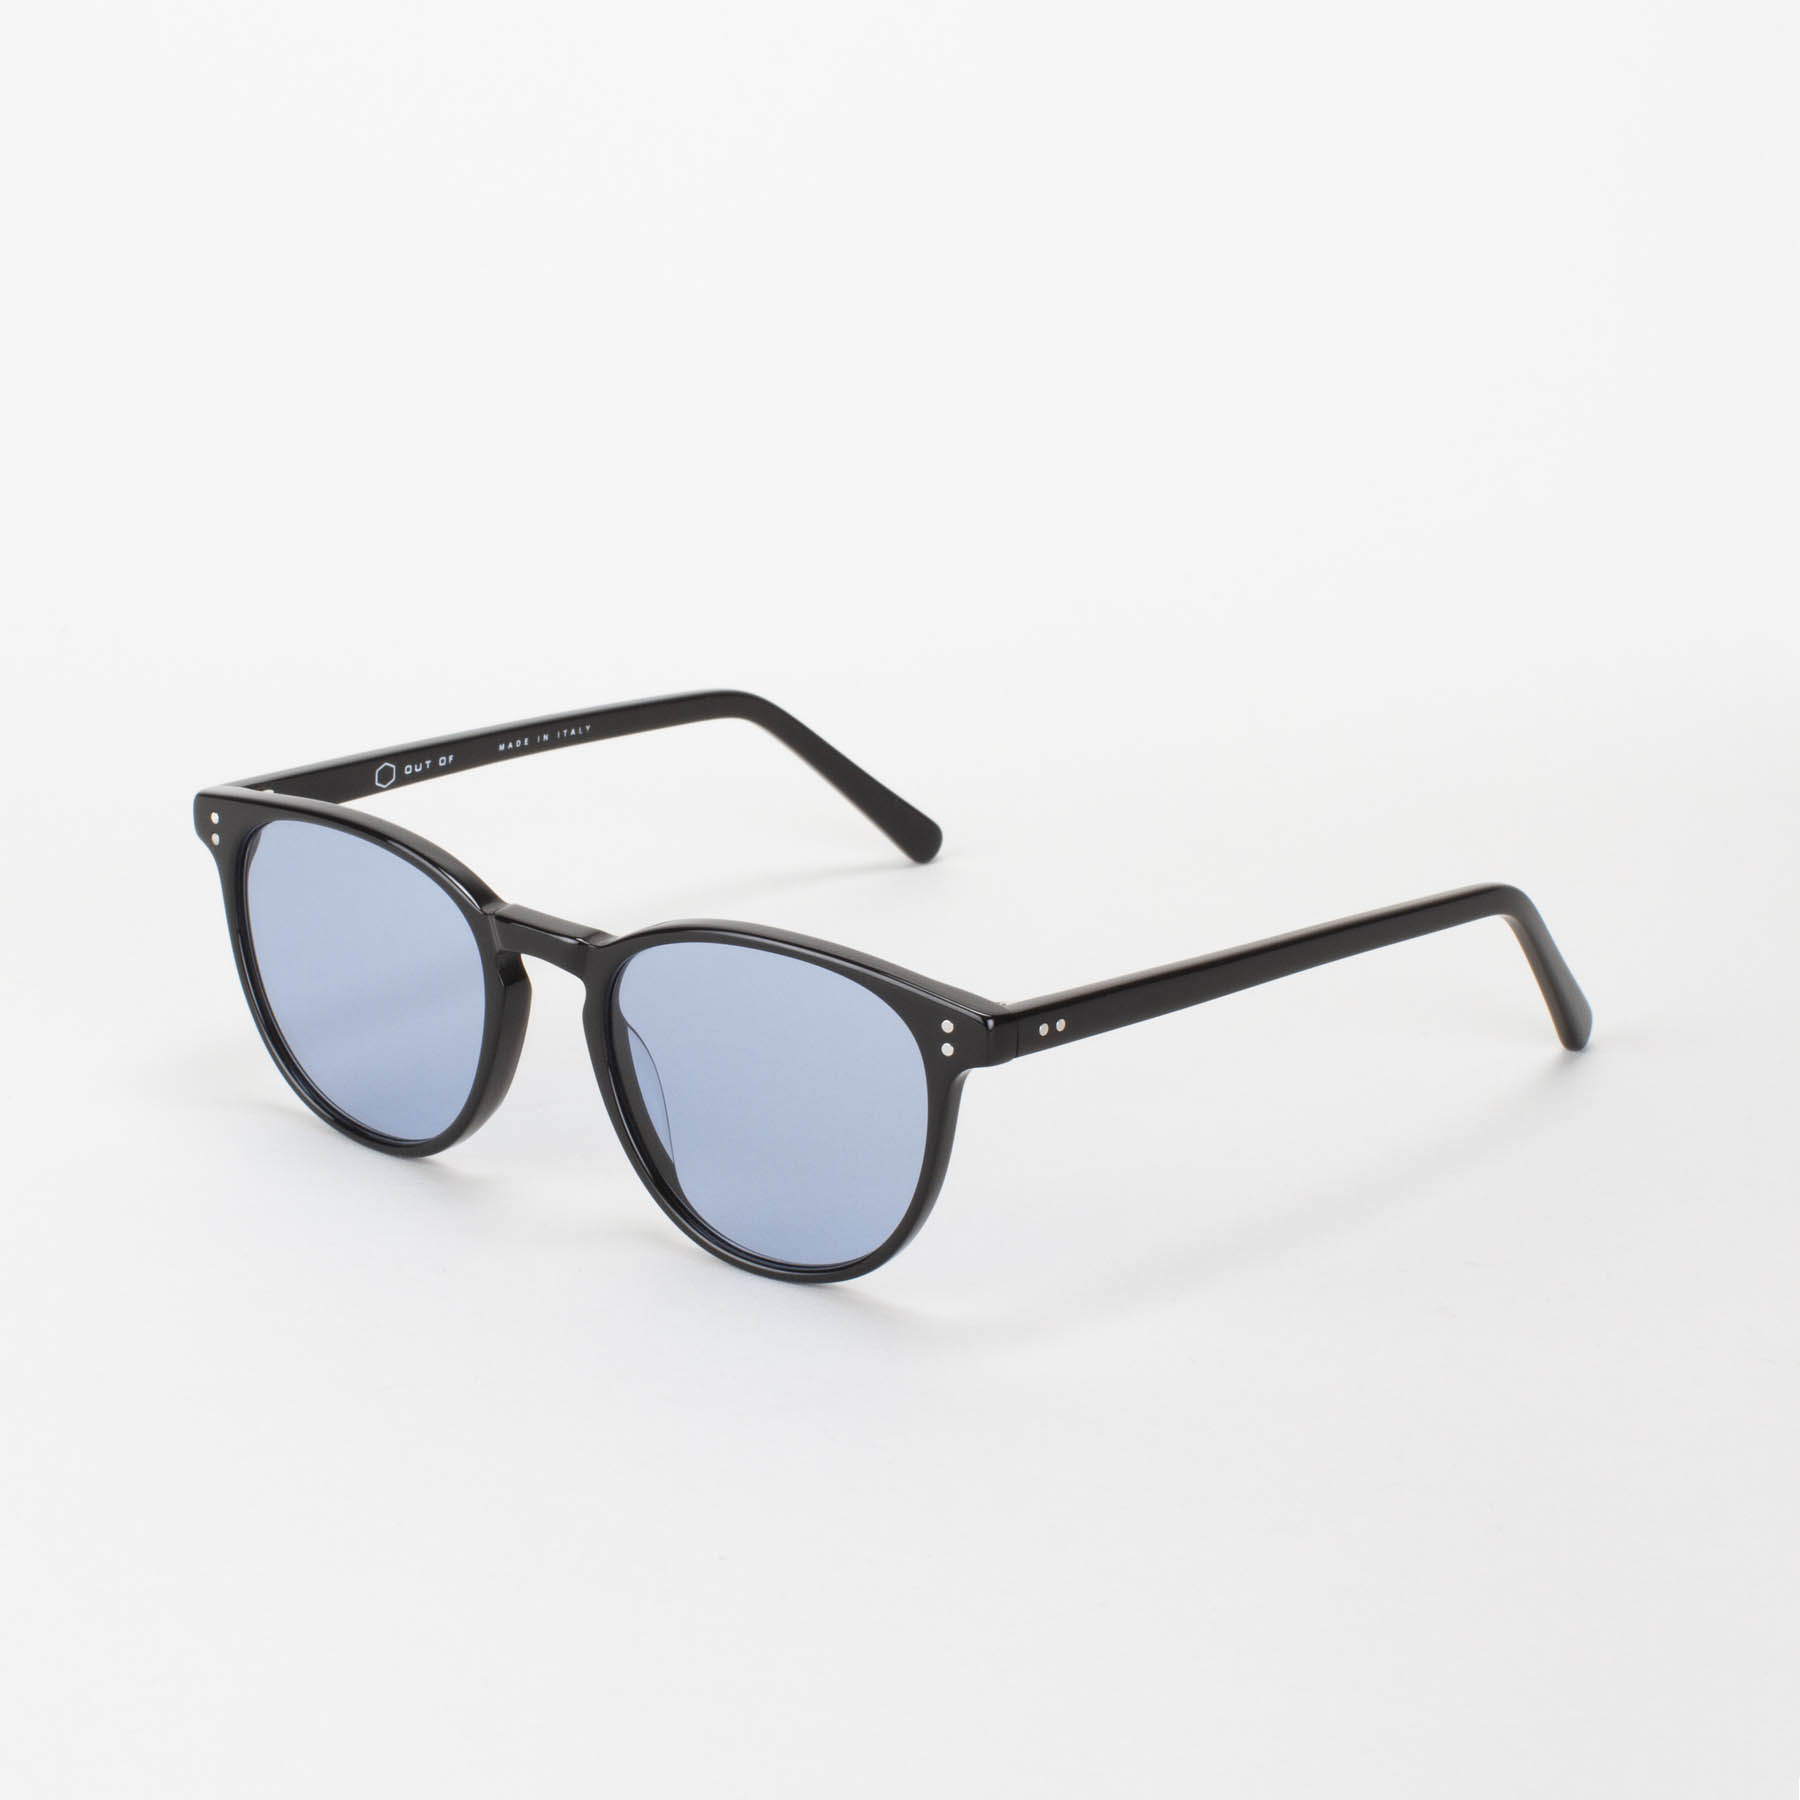 Custodia occhiali in pelle navy / Slip occhiali da sole in pelle fatti a  mano / Borsa occhiali blu / Collezione Missouri -  Italia